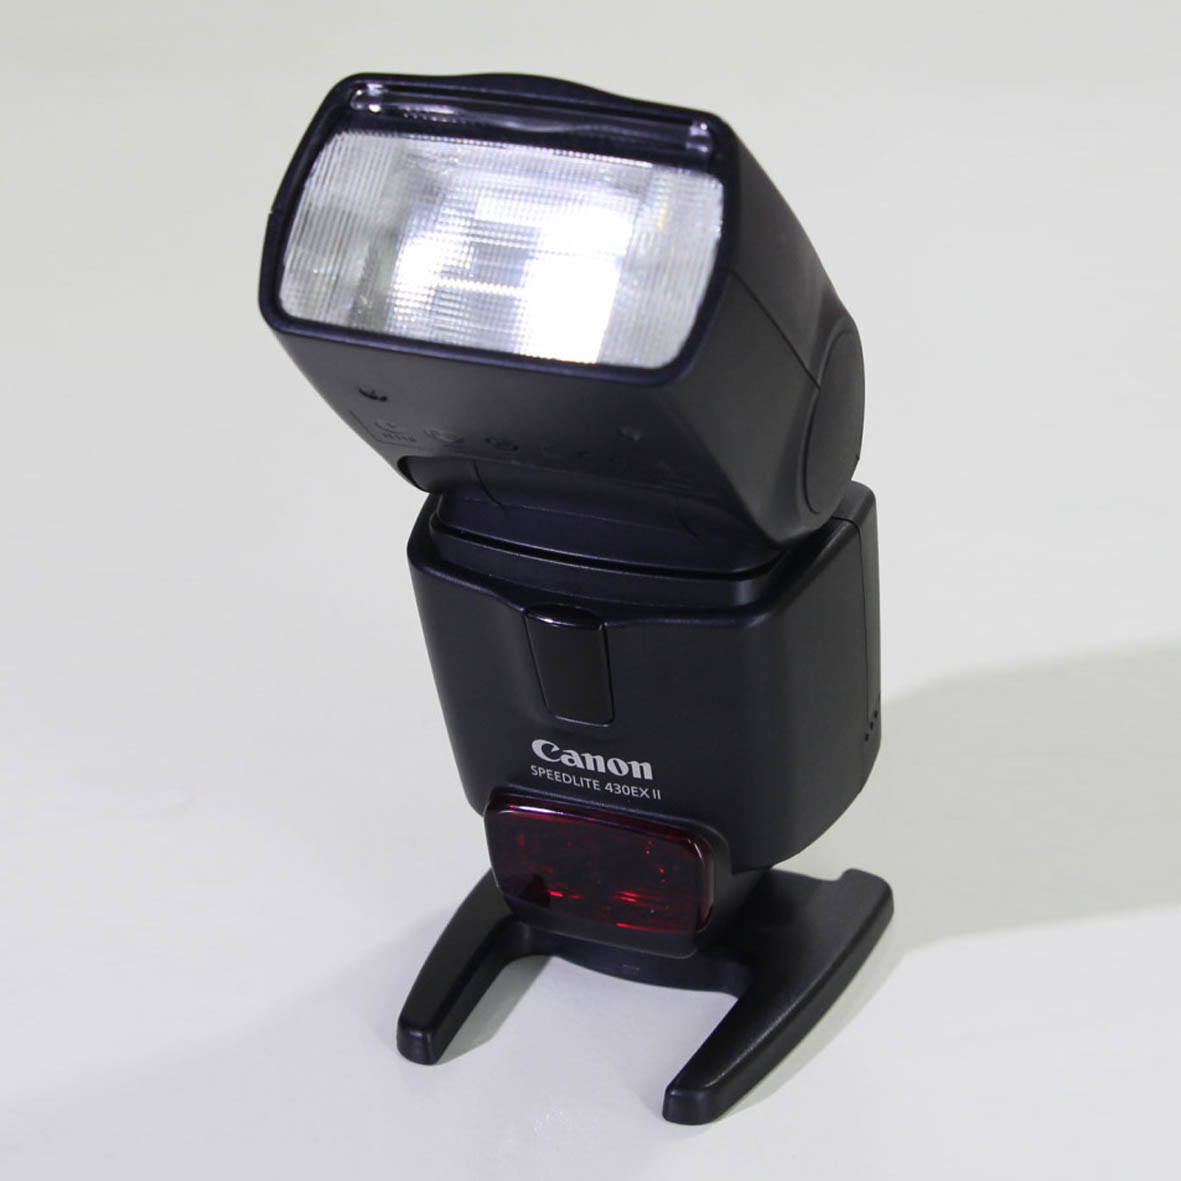 Đèn Canon Speedlite 430EX II